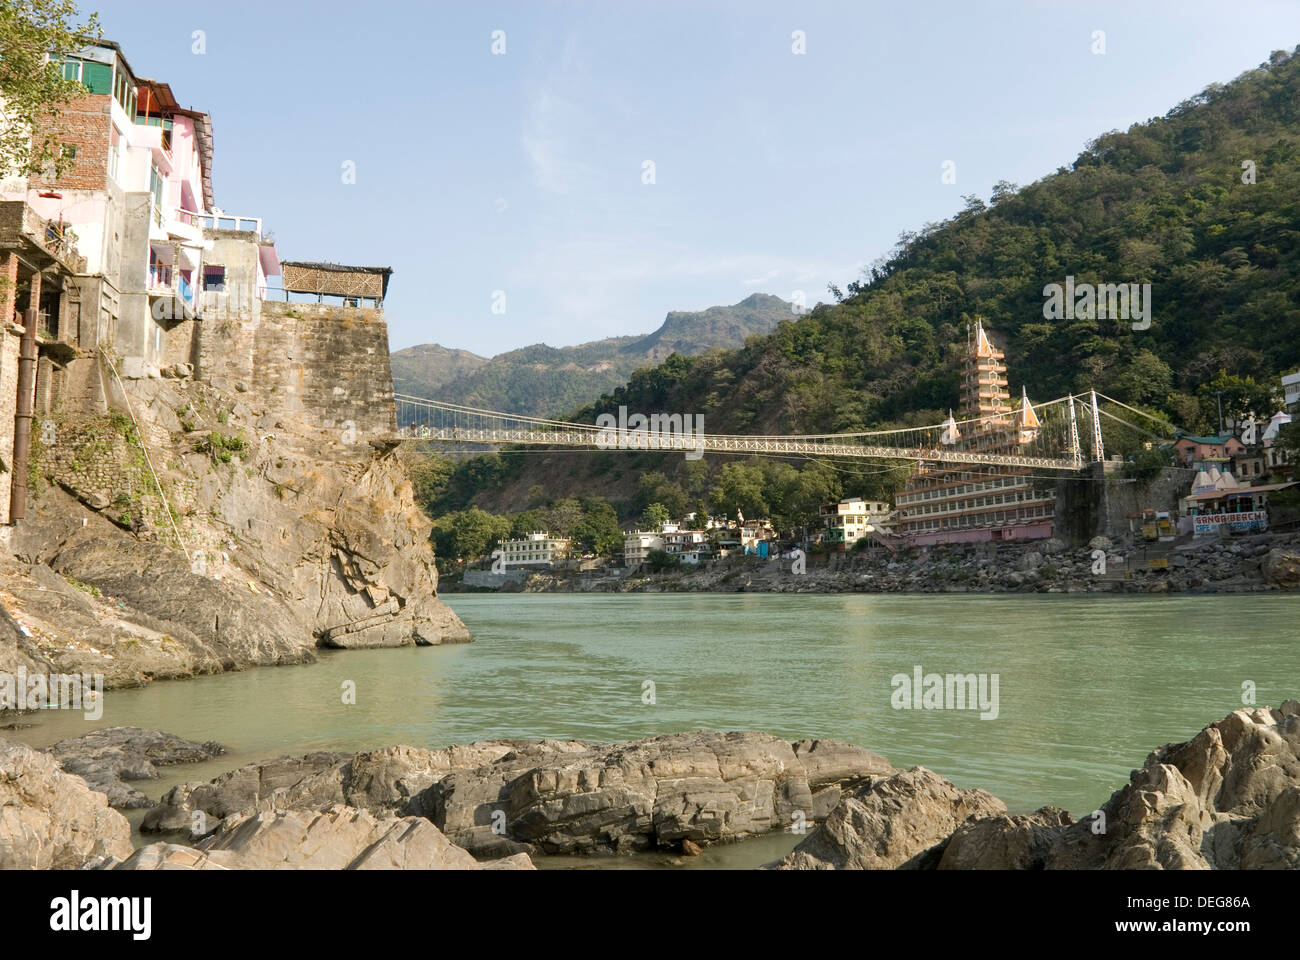 Ashrams sur rives de fleuve Ganges, Lakshman Jhula, Rishikesh, Inde Banque D'Images